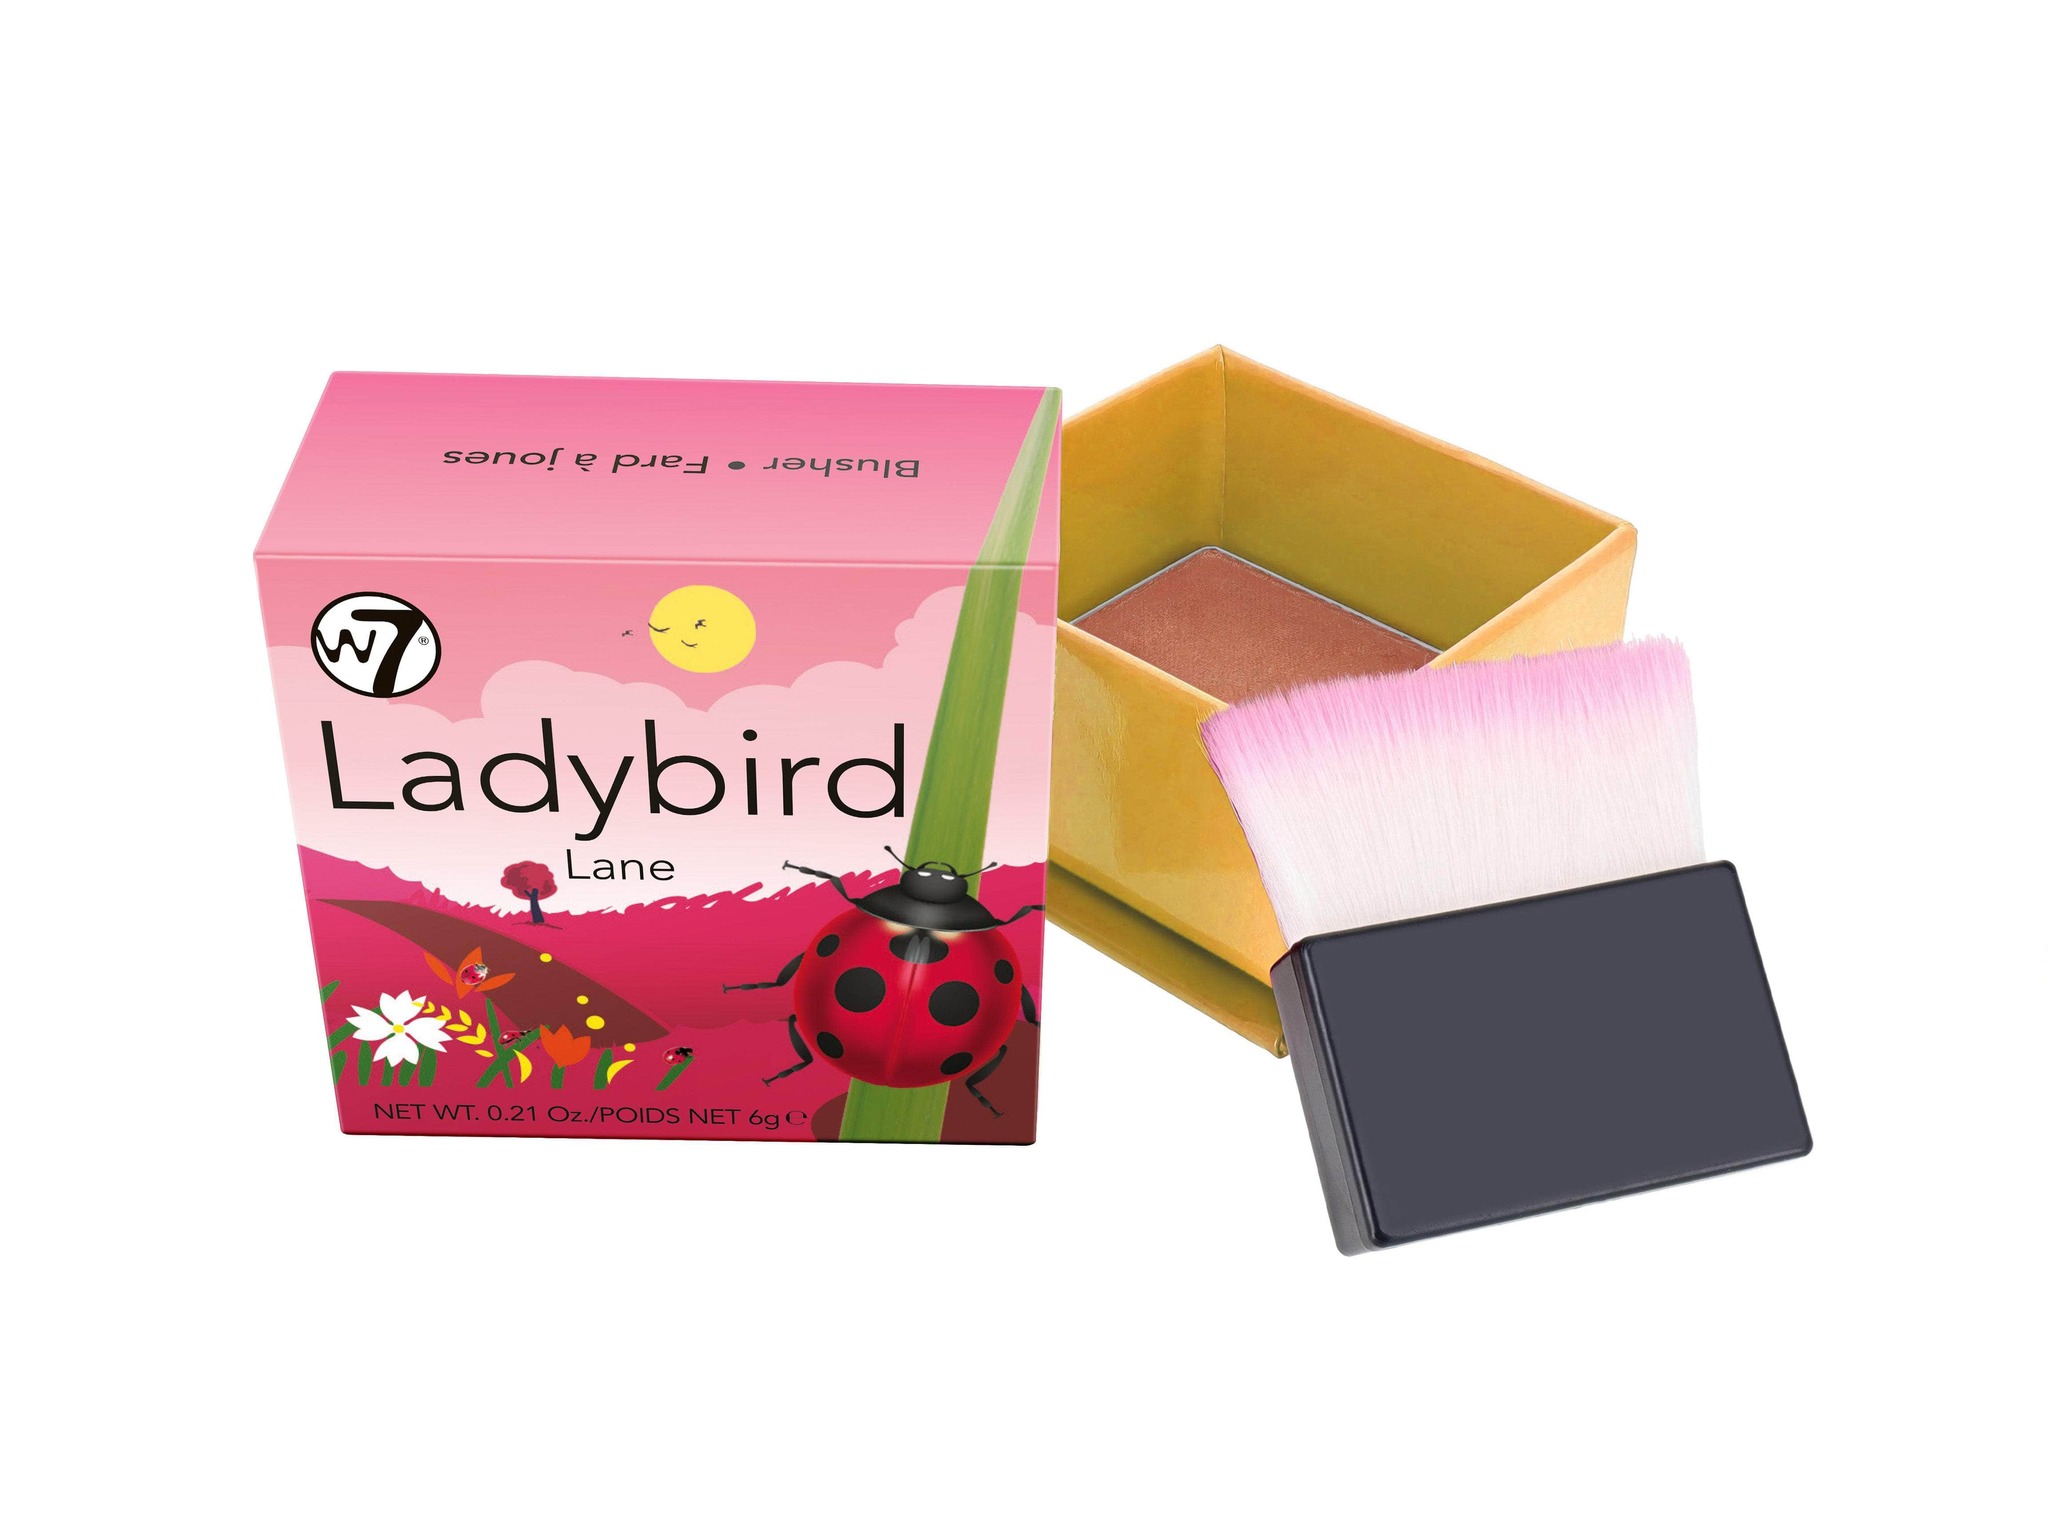 W7 Ladybird Lane Blusher